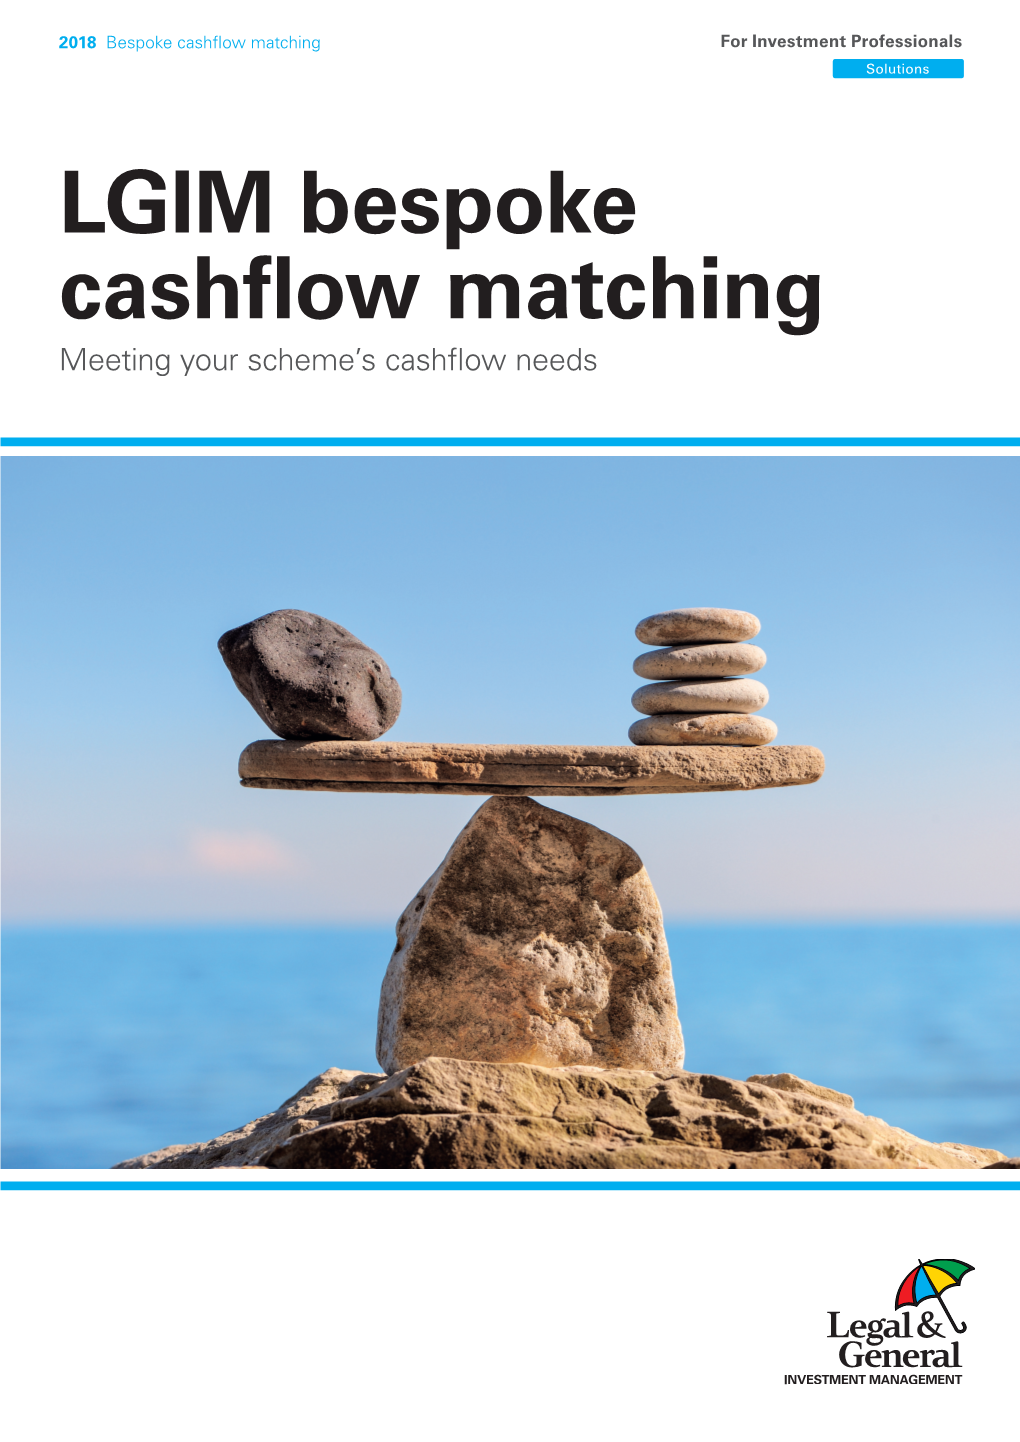 LGIM Bespoke Cashfow Matching Meeting Your Scheme’S Cashfow Needs 2018 Bespoke Cashflow Matching